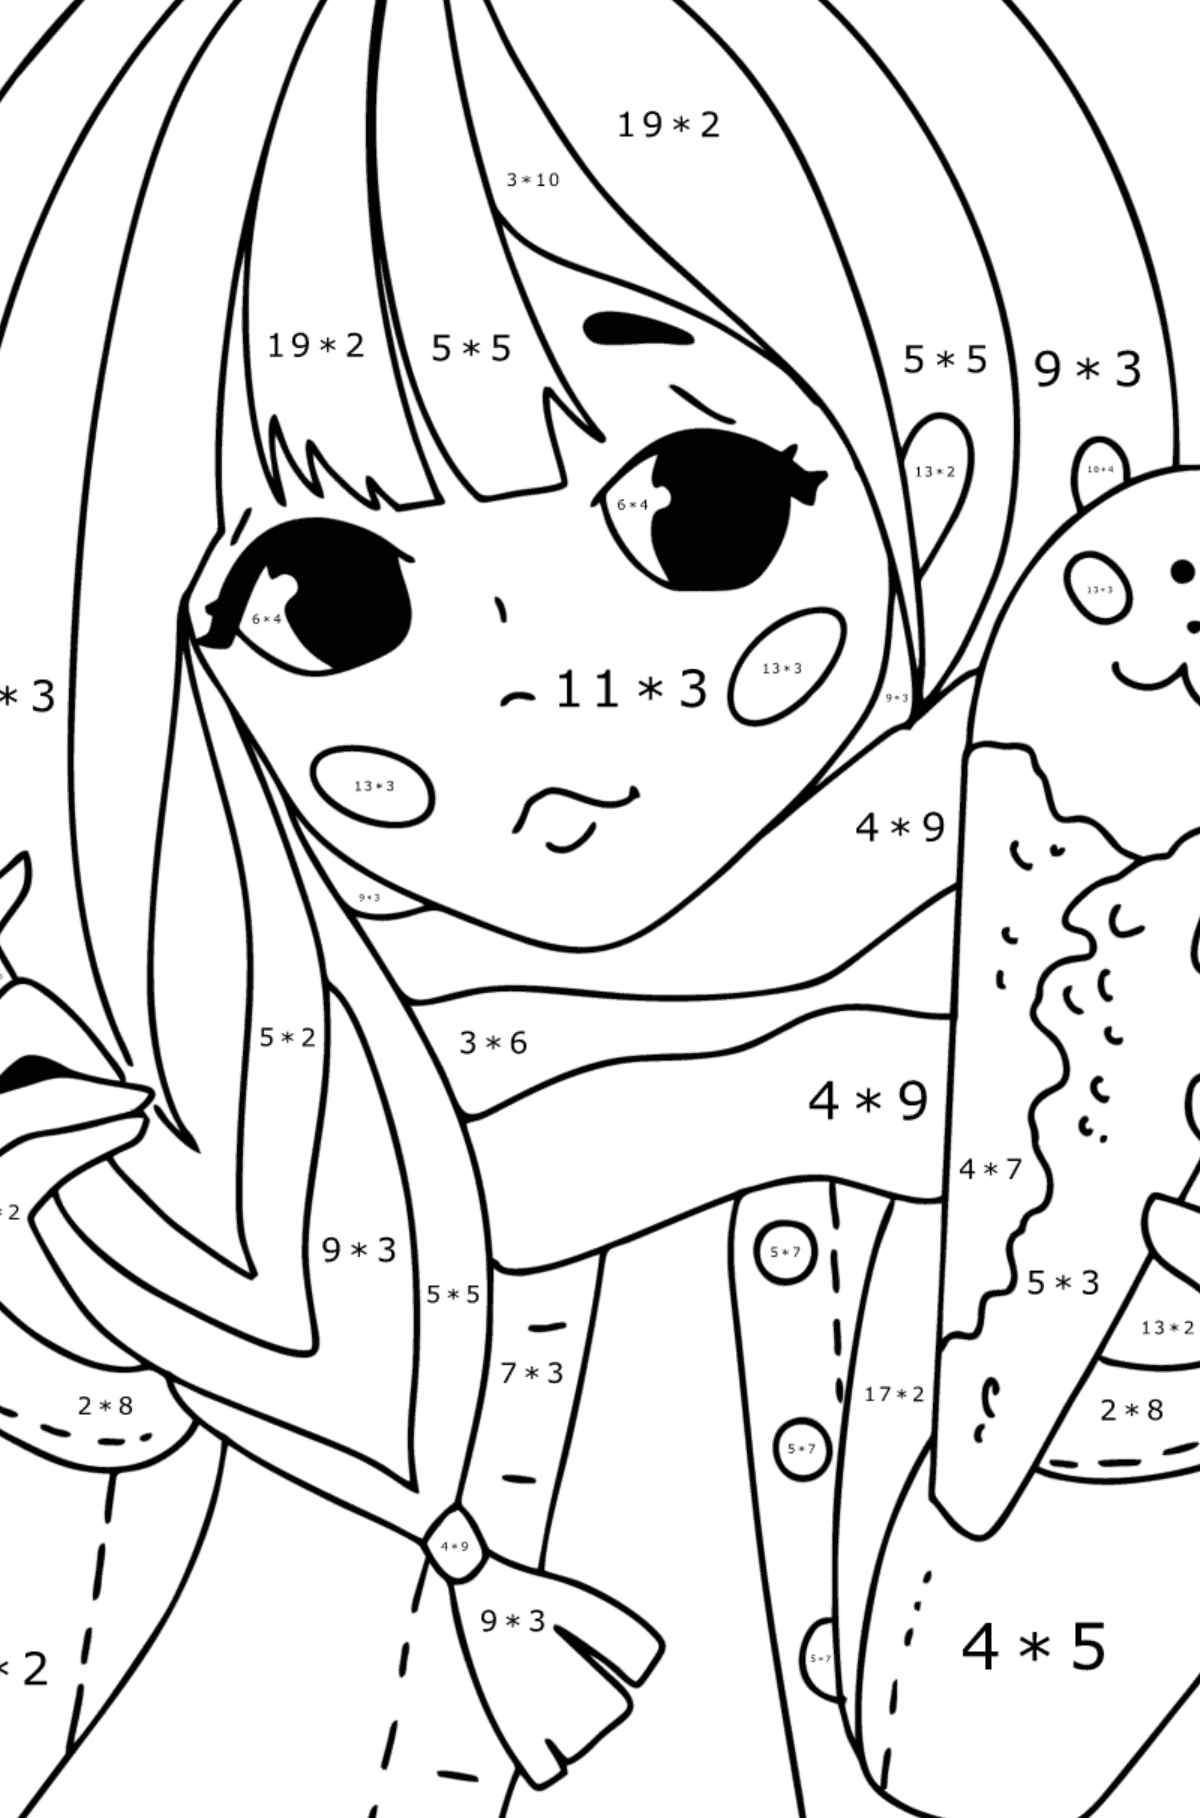 Hübsches Anime-Mädchen zum Ausmalen - Mathe Ausmalbilder - Multiplikation für Kinder